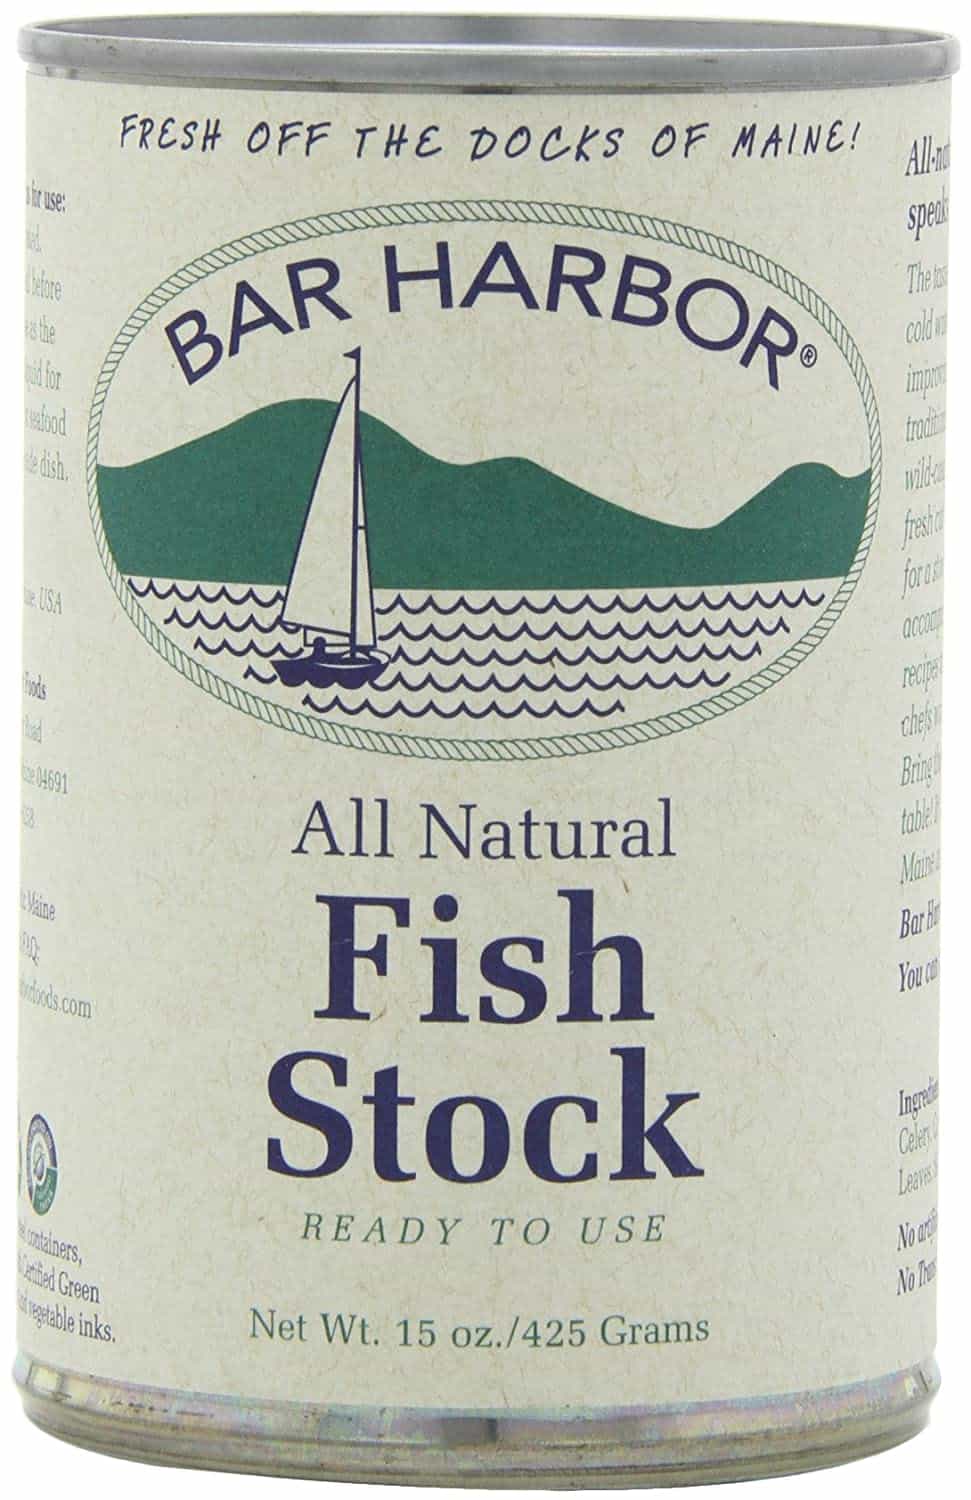 Bar Harbor fish stock